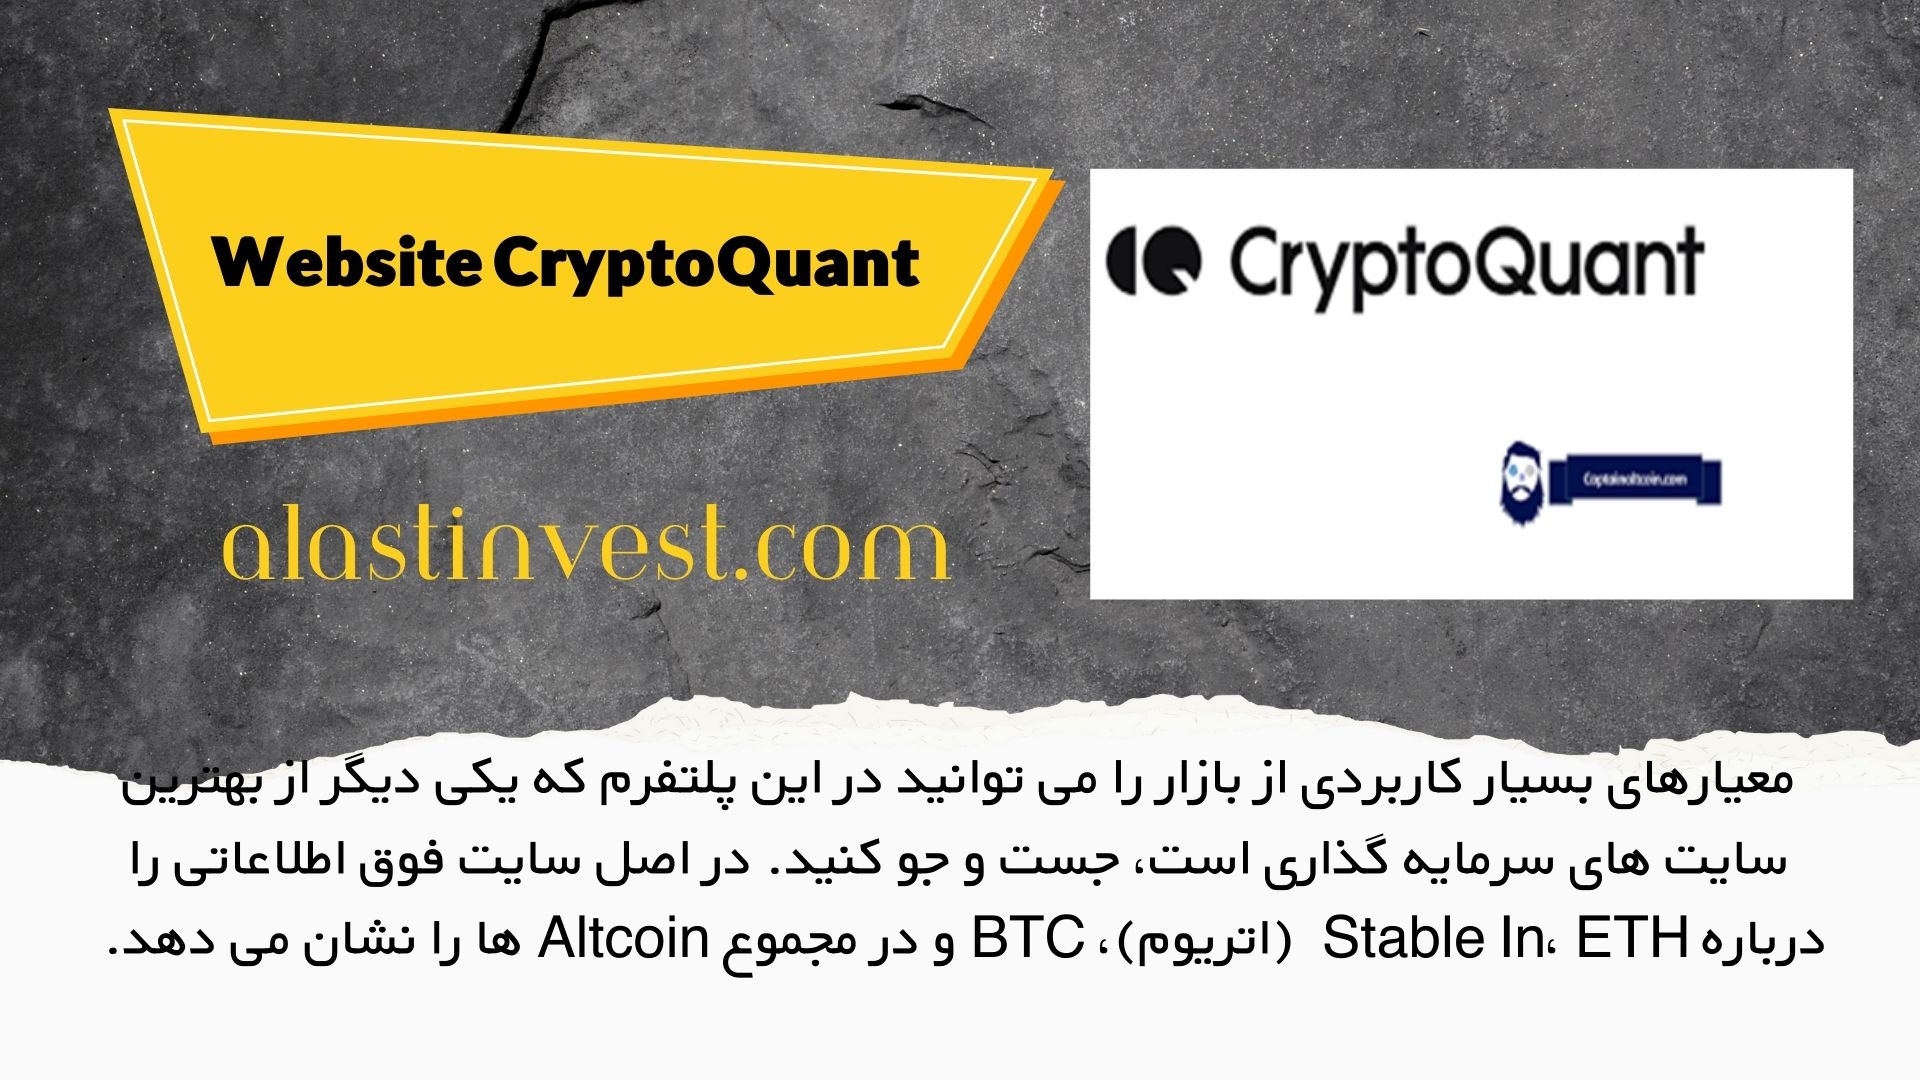 Website CryptoQuant: